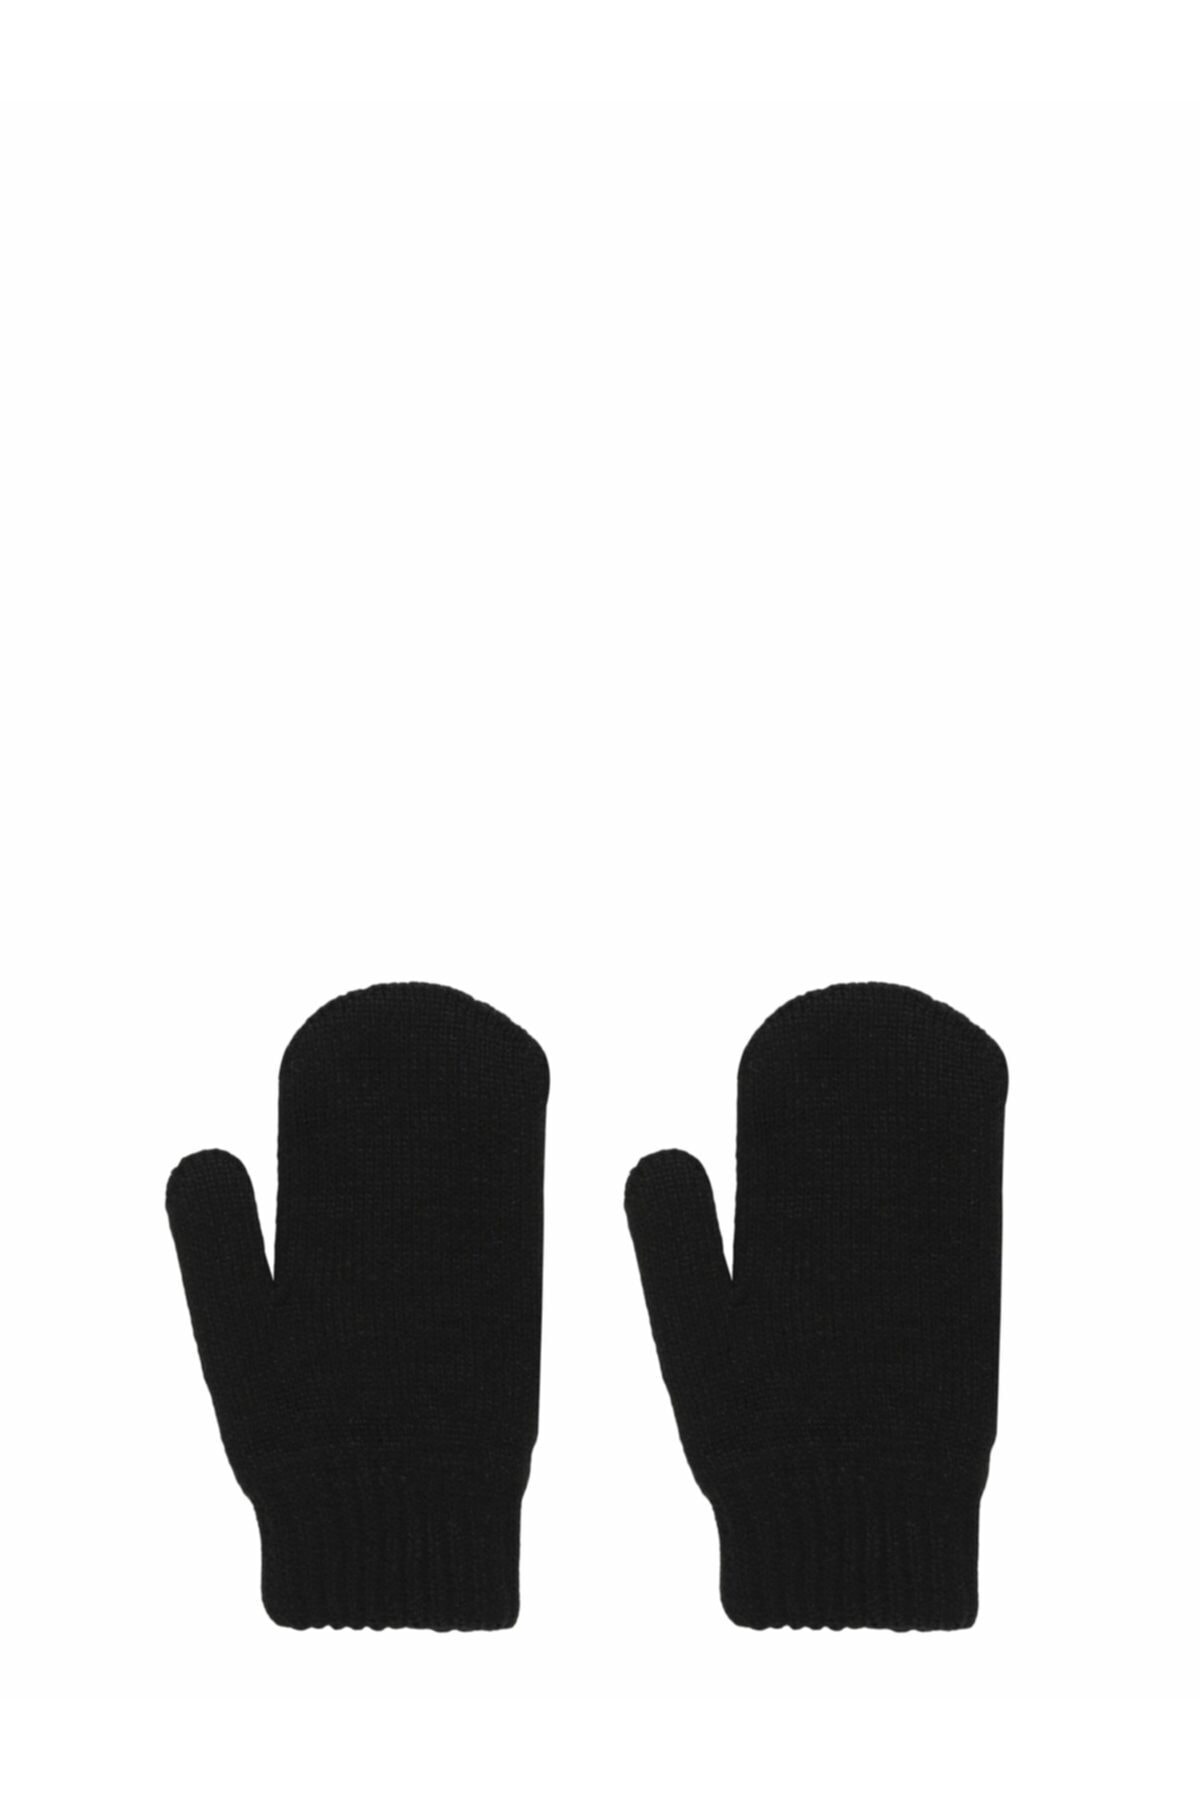 دستکش زنانه سیاه برند colin s .CL1056258_Q1.V1_BLK 